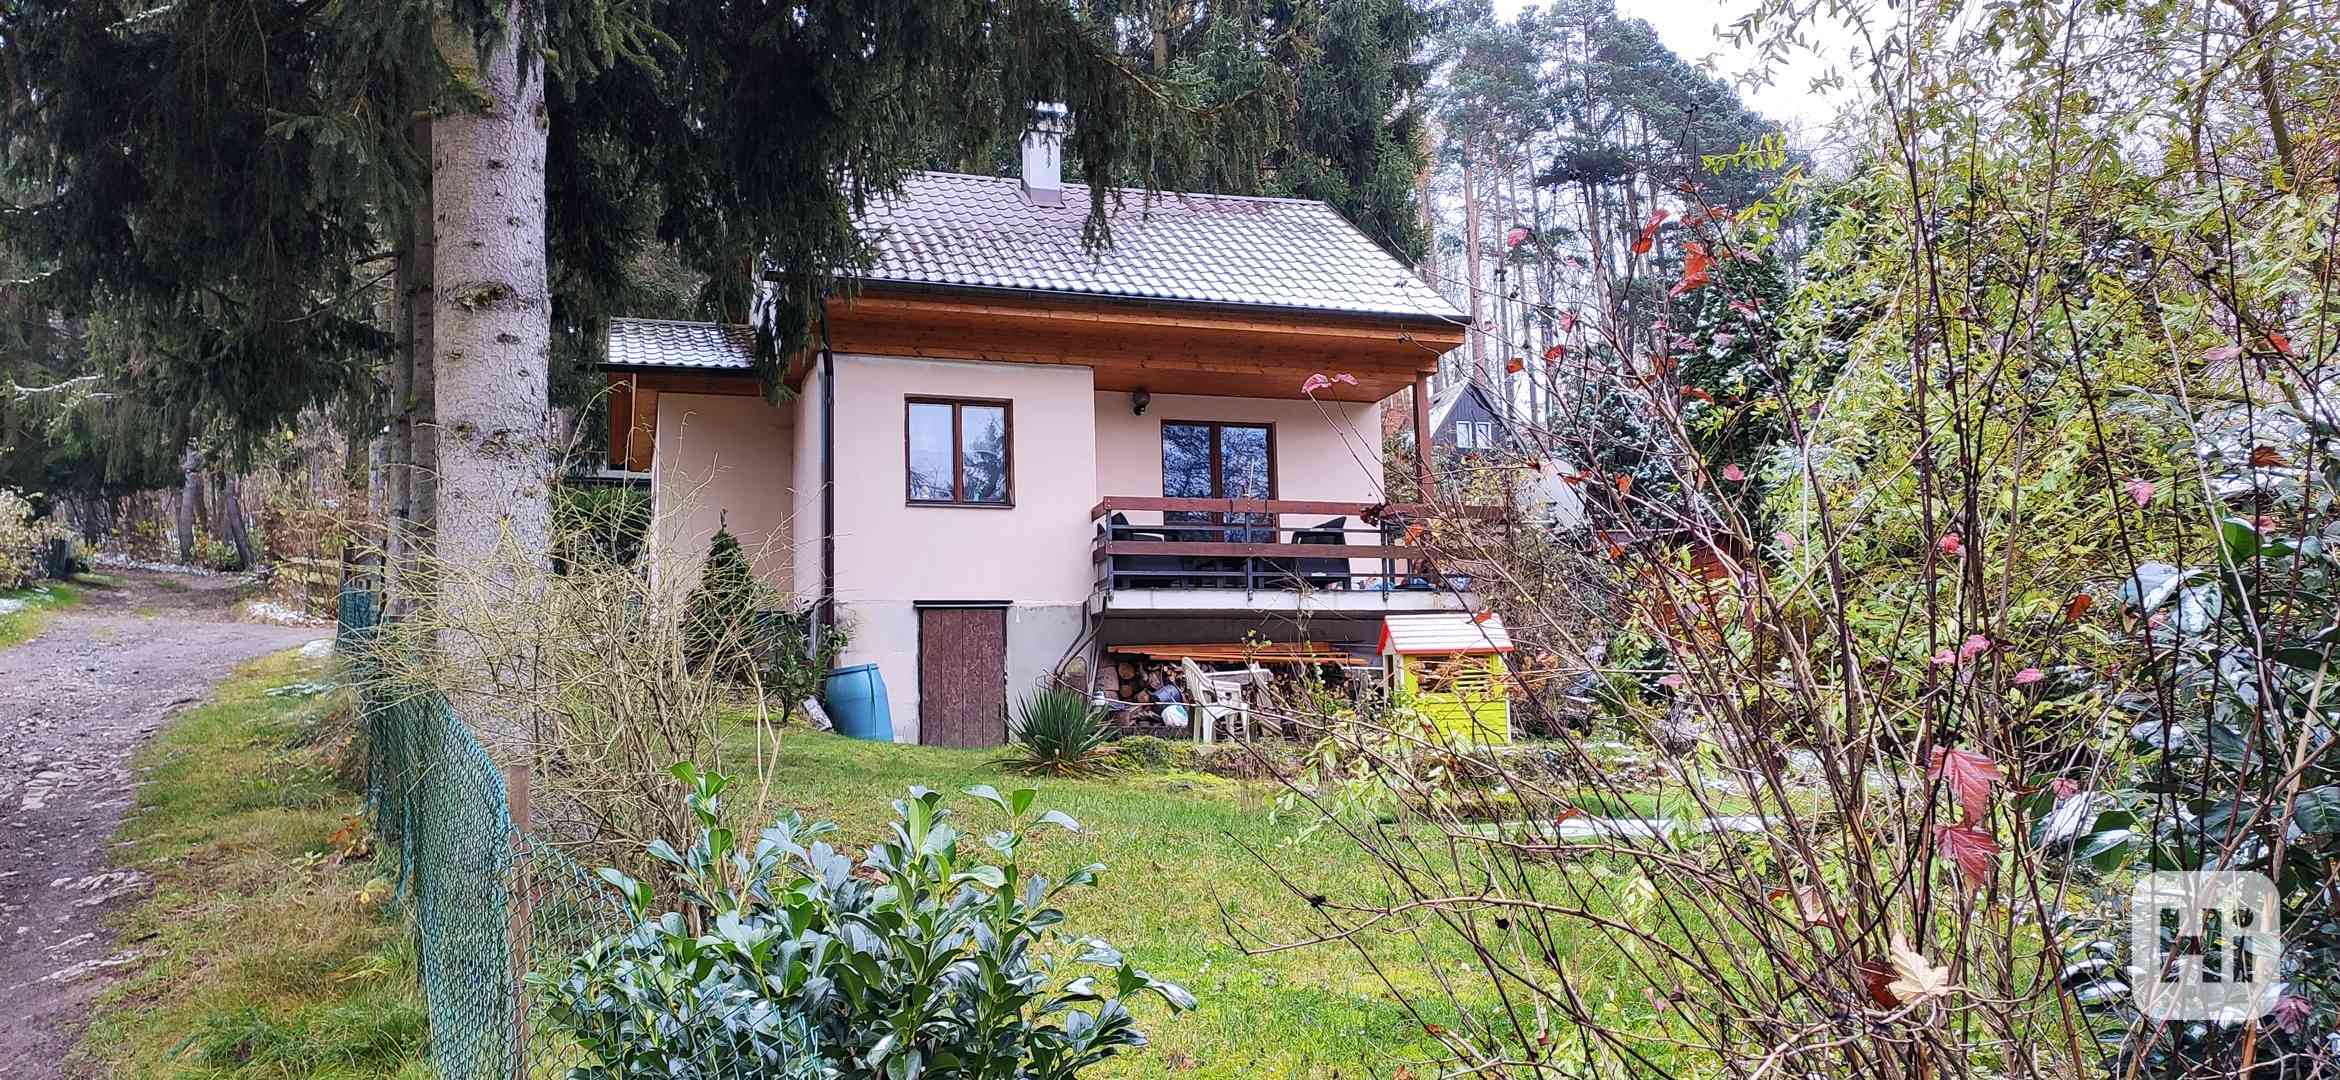 Vyměním chatu 28 km od Prahy za Jizerské hory, Krkonoše  - foto 1